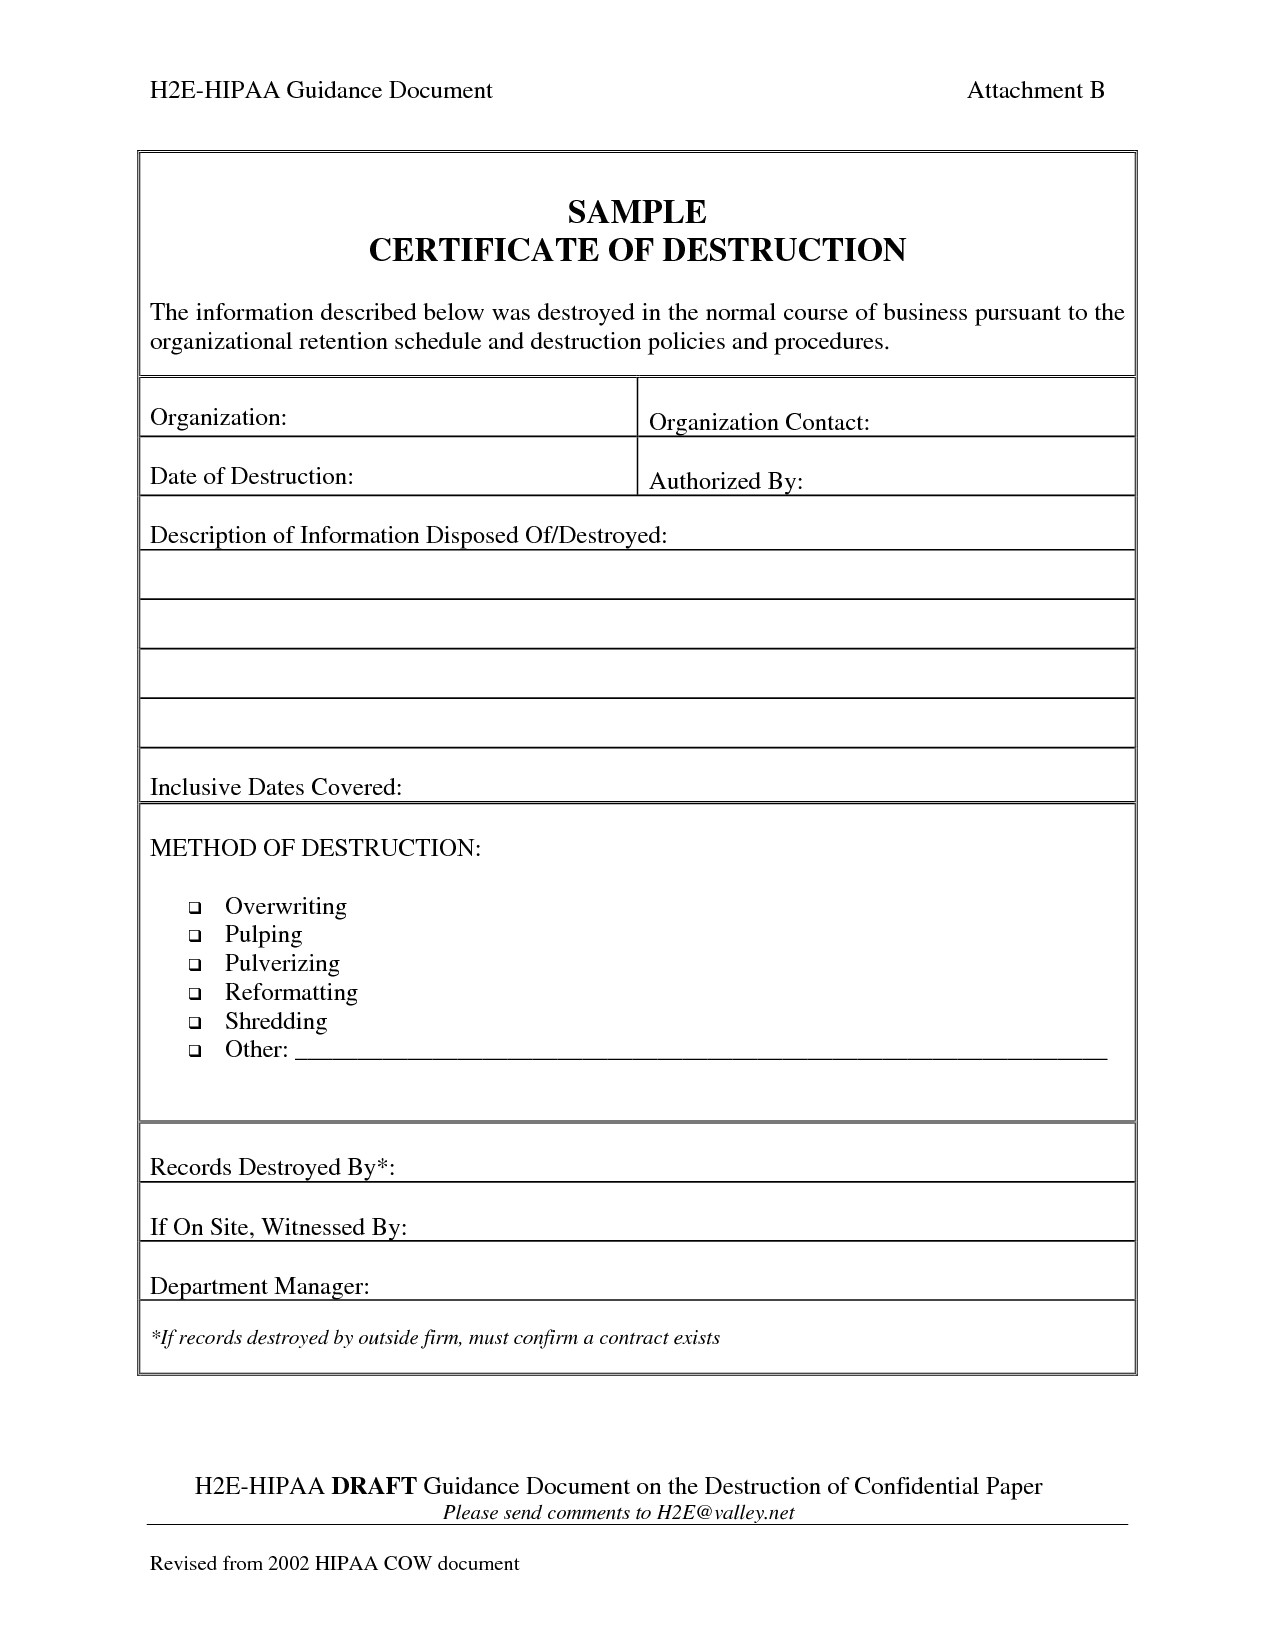 destruction certificate template